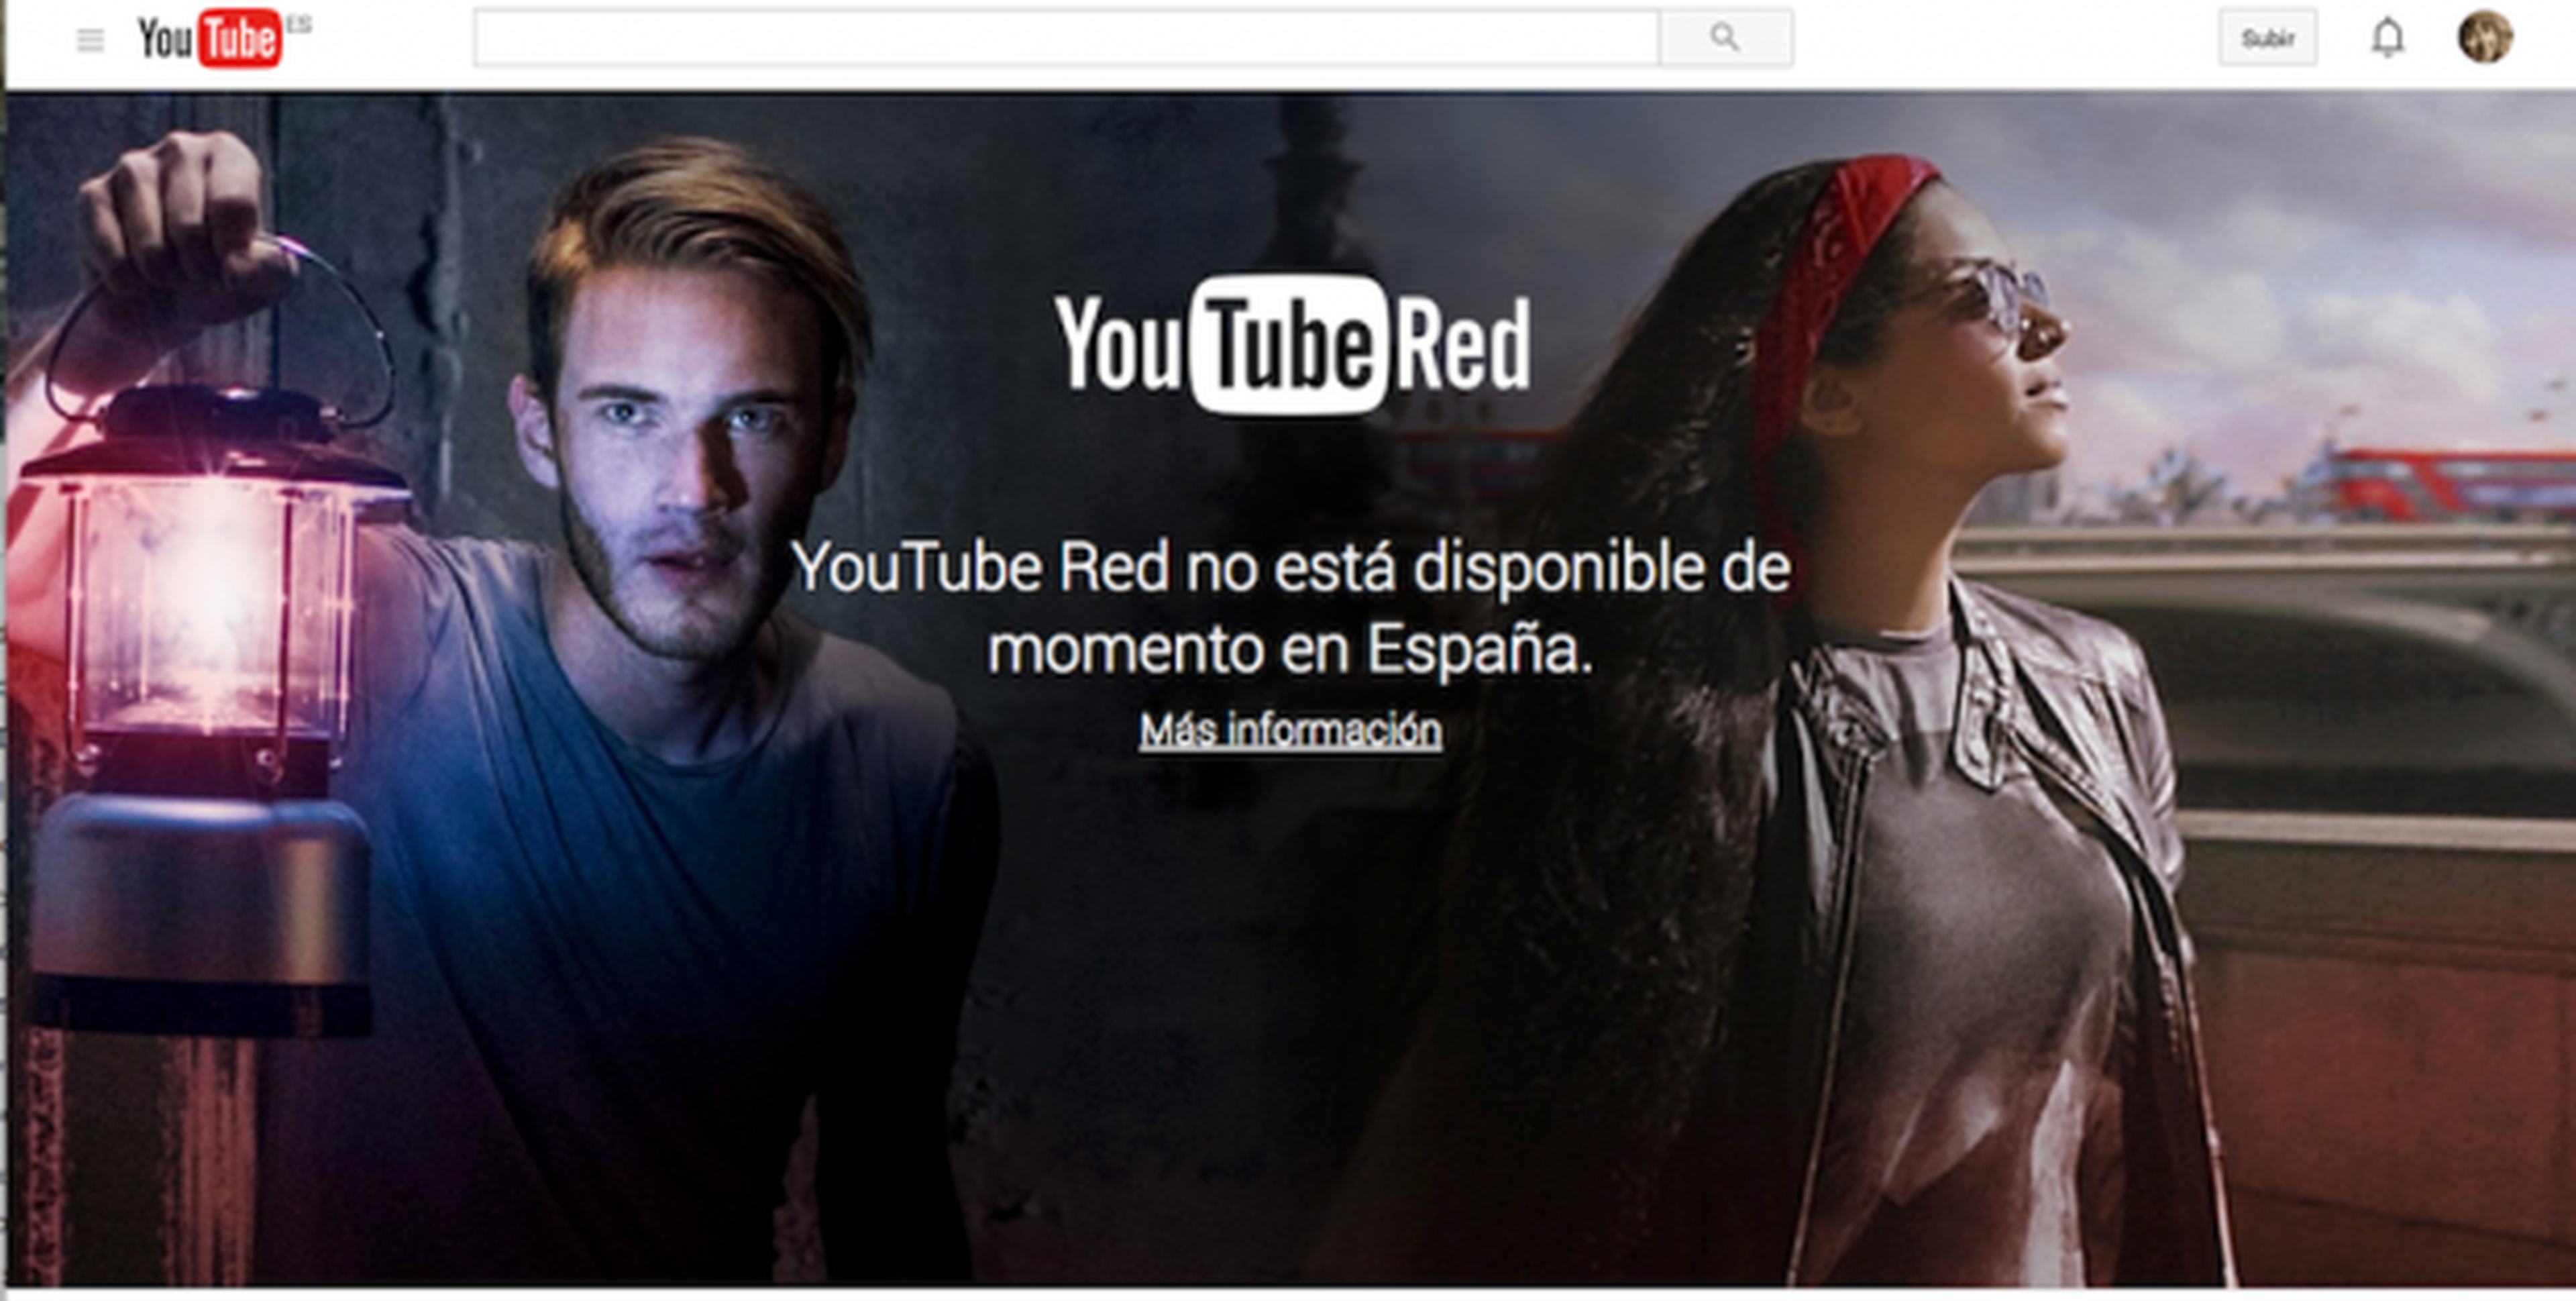 ¿Desbancará YouTube Red a Netflix?